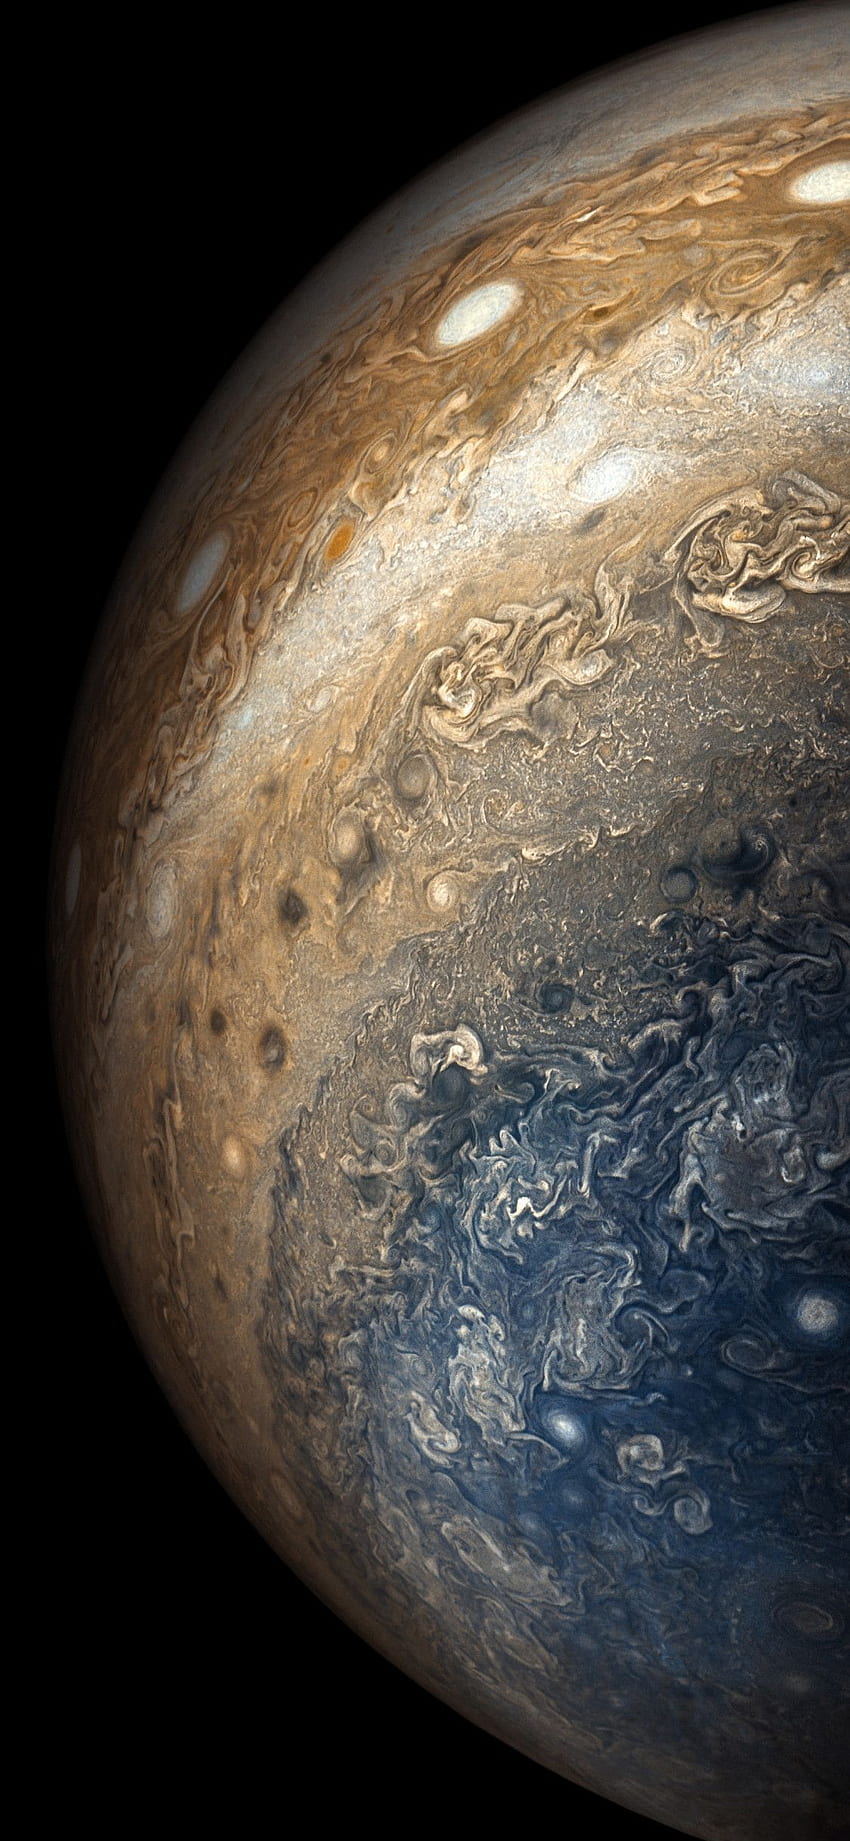 Jupiter - một trong những hành tinh lớn nhất trong hệ mặt trời, vẫn luôn làm chúng ta ngưỡng mộ. Hãy dùng hình nền Jupiter cho iPhone XS, iPhone 10, iPhone X để thay đổi không khí trên màn hình, mang tới cảm giác thật tuyệt vời. Hình nền này đặc biệt phù hợp với những người yêu thích thiên văn học và vũ trụ.